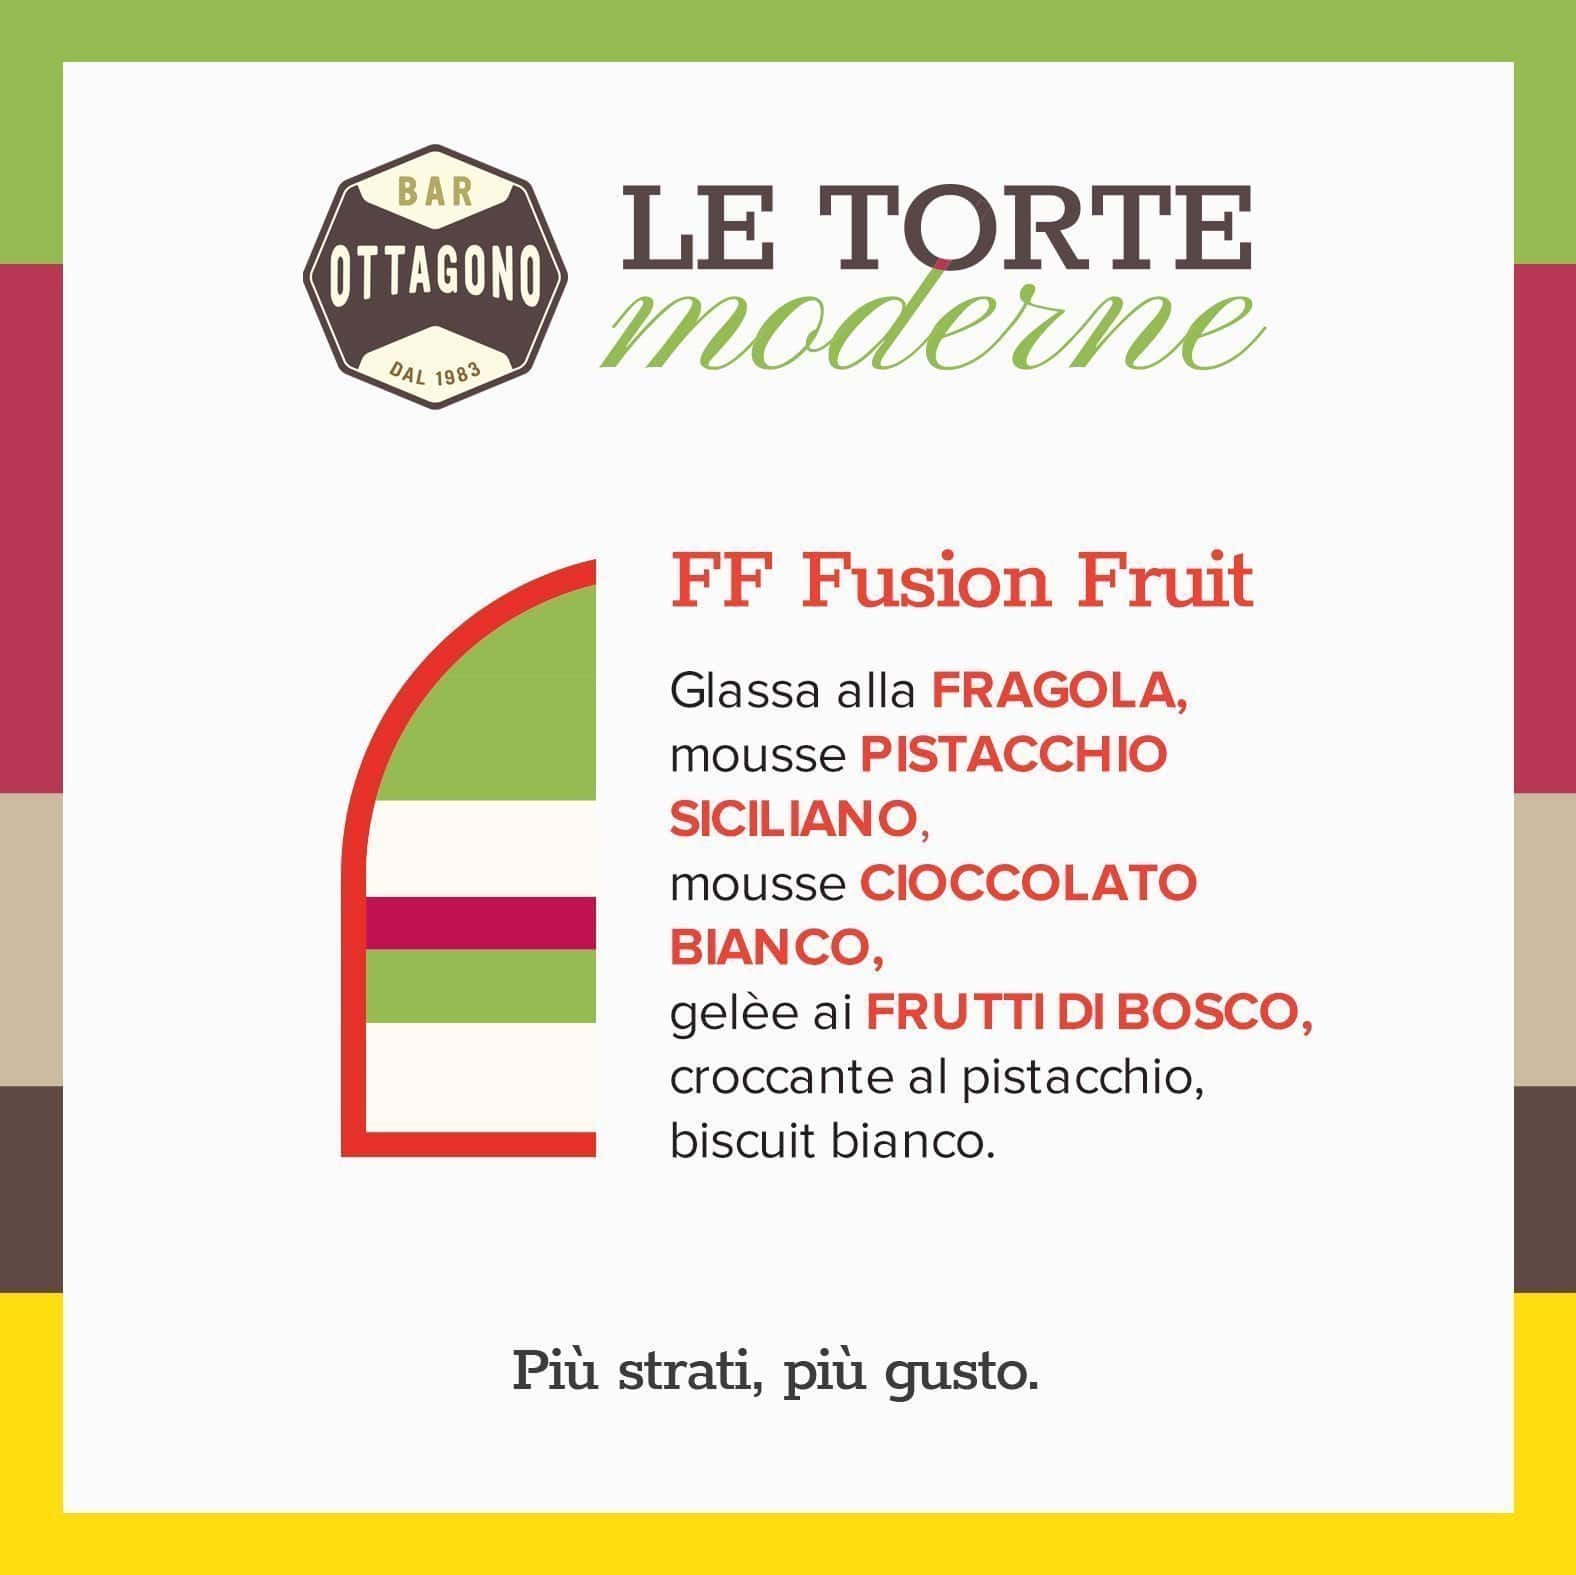 FF Fusion Fruit (Frutti di Bosco, Cioccolato Bianco, Pistacchio) - Ottagono - Pasticceria dal 1983 - Torte in Pasticceria Moderna - sicilia - catania - online